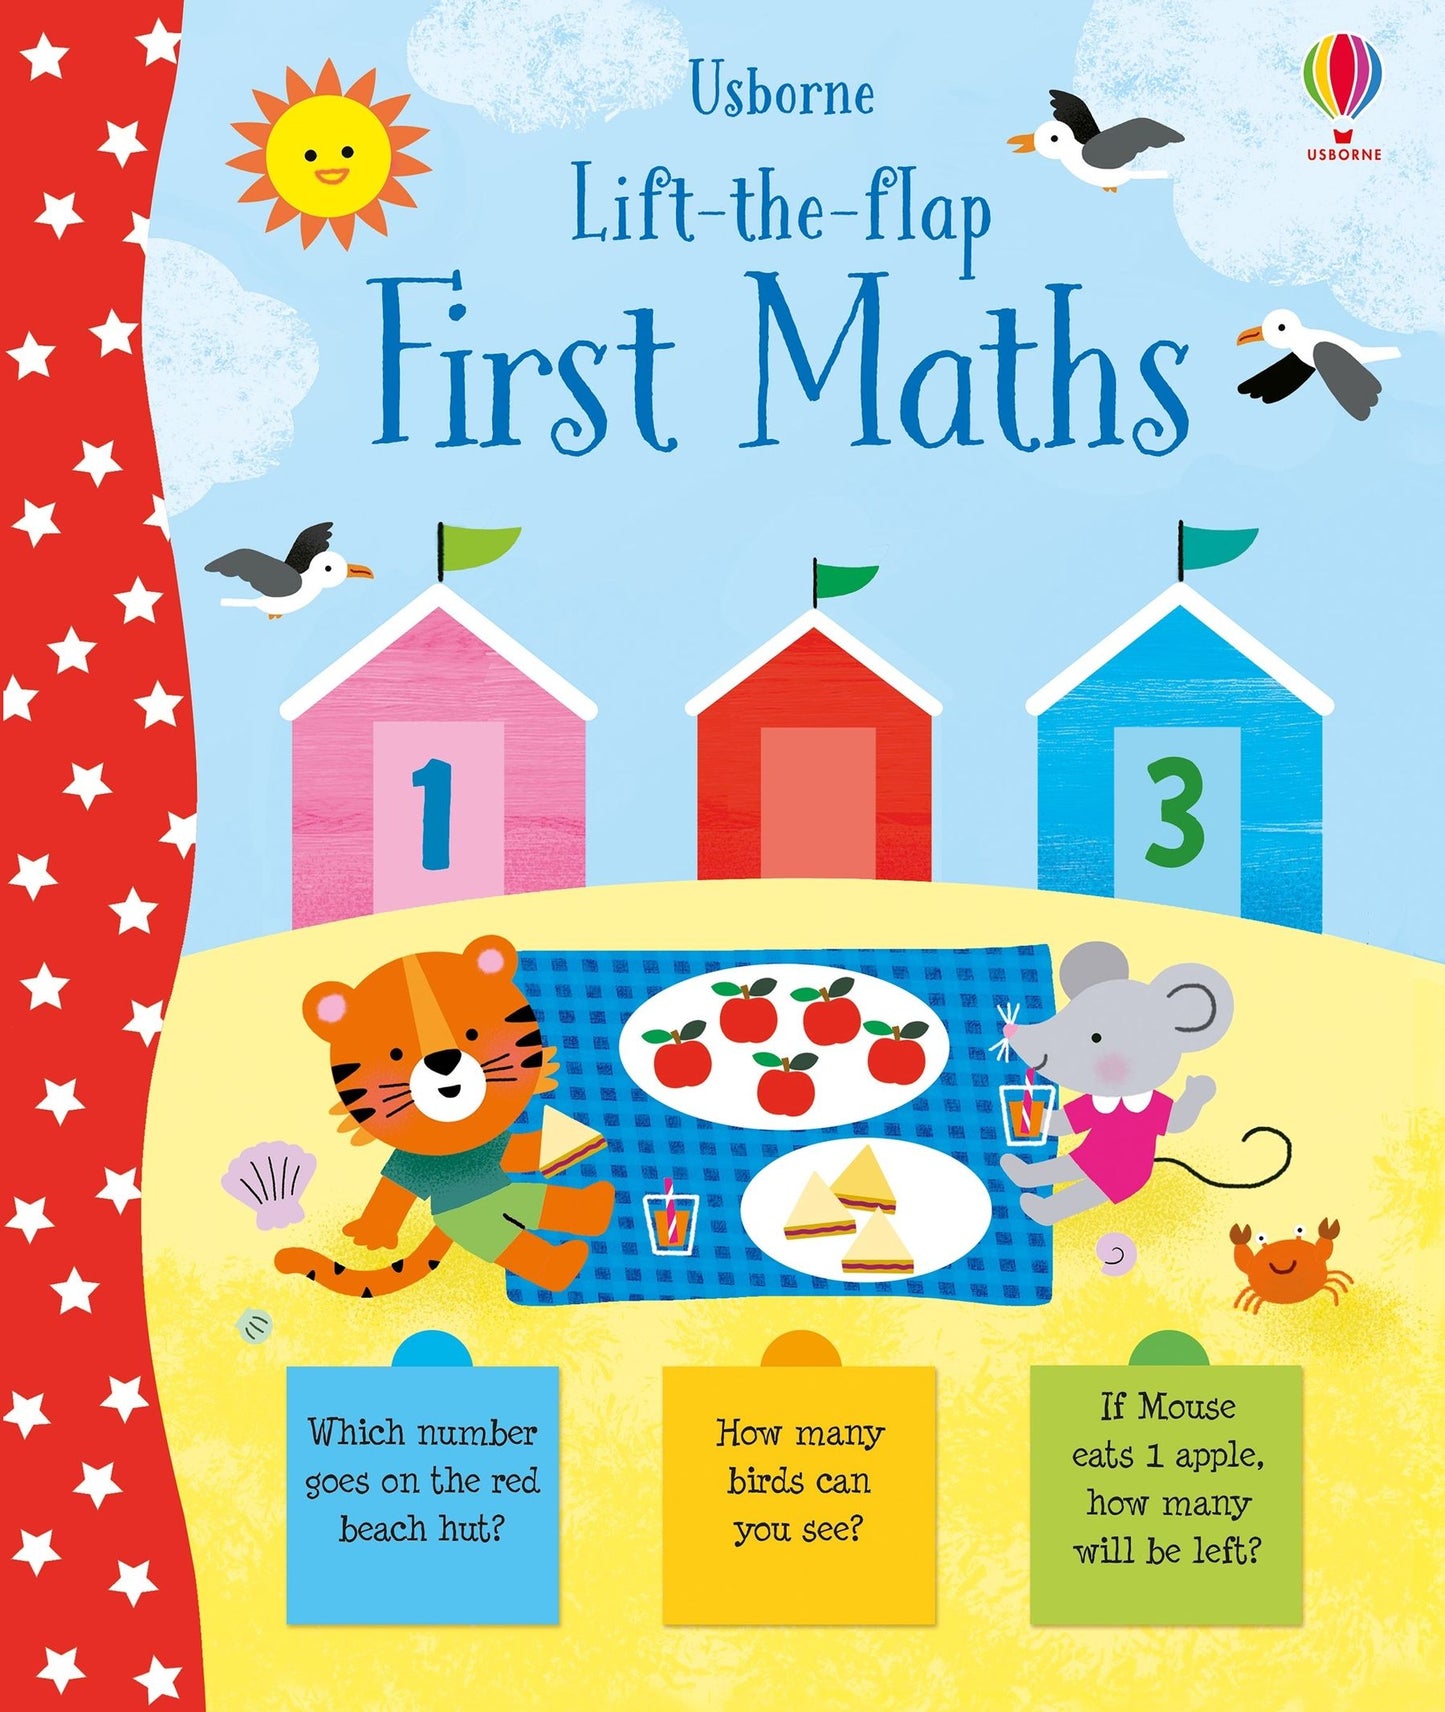 Lift-the-flap: First Maths